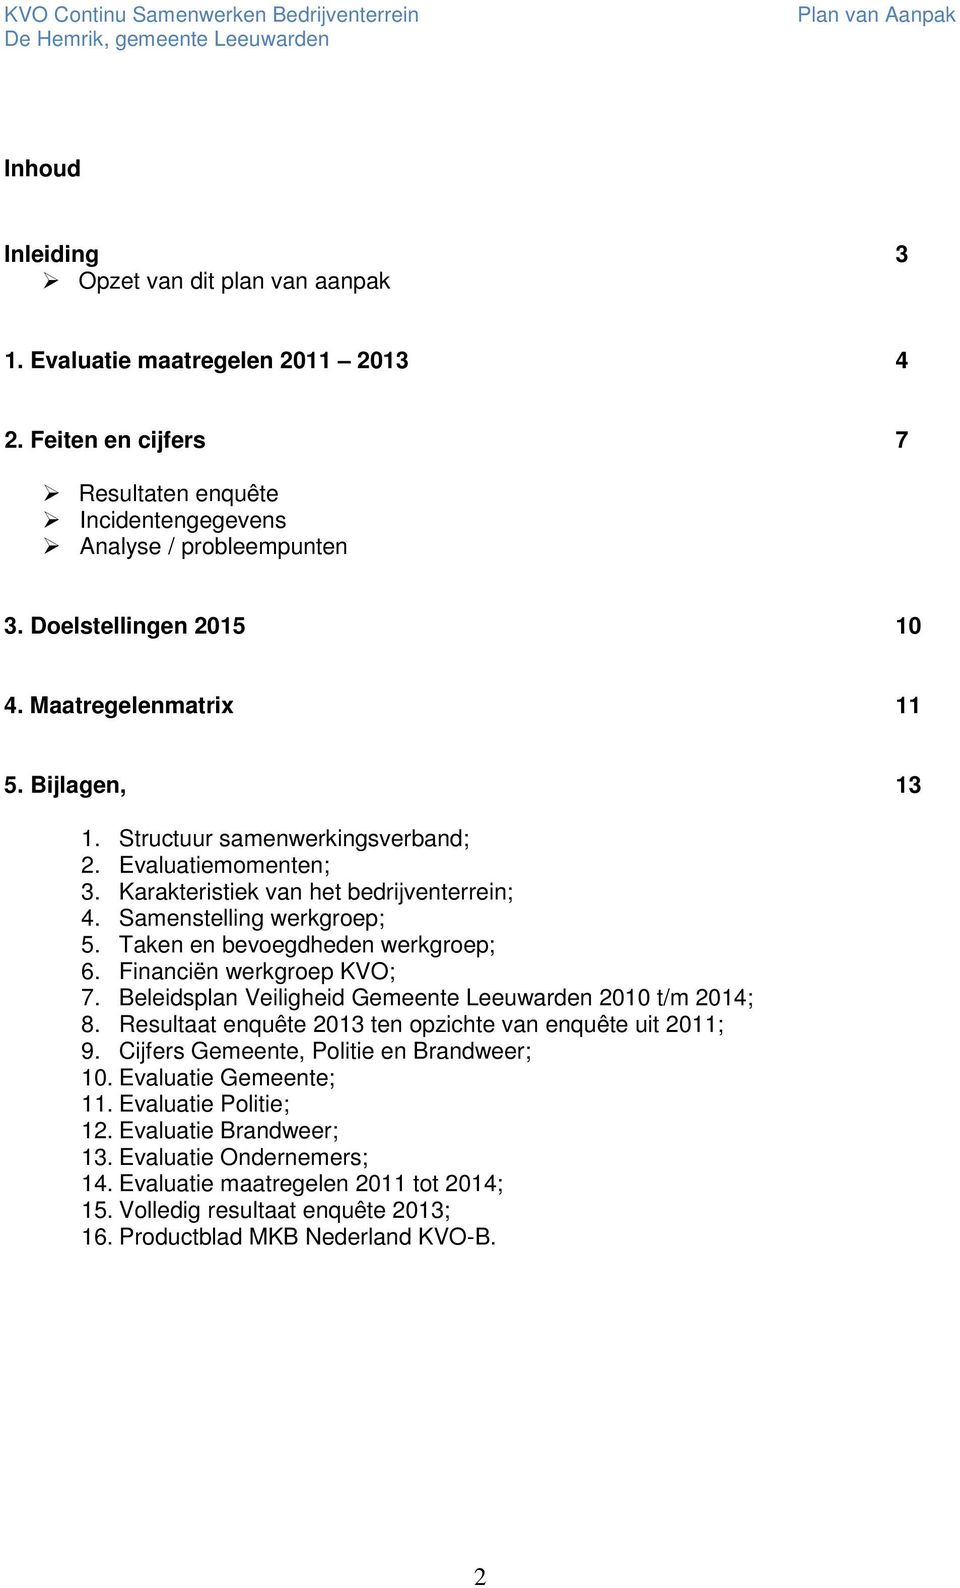 Taken en bevoegdheden werkgroep; 6. Financiën werkgroep KVO; 7. Beleidsplan Veiligheid Gemeente Leeuwarden 2010 t/m 2014; 8. Resultaat enquête 2013 ten opzichte van enquête uit 2011; 9.